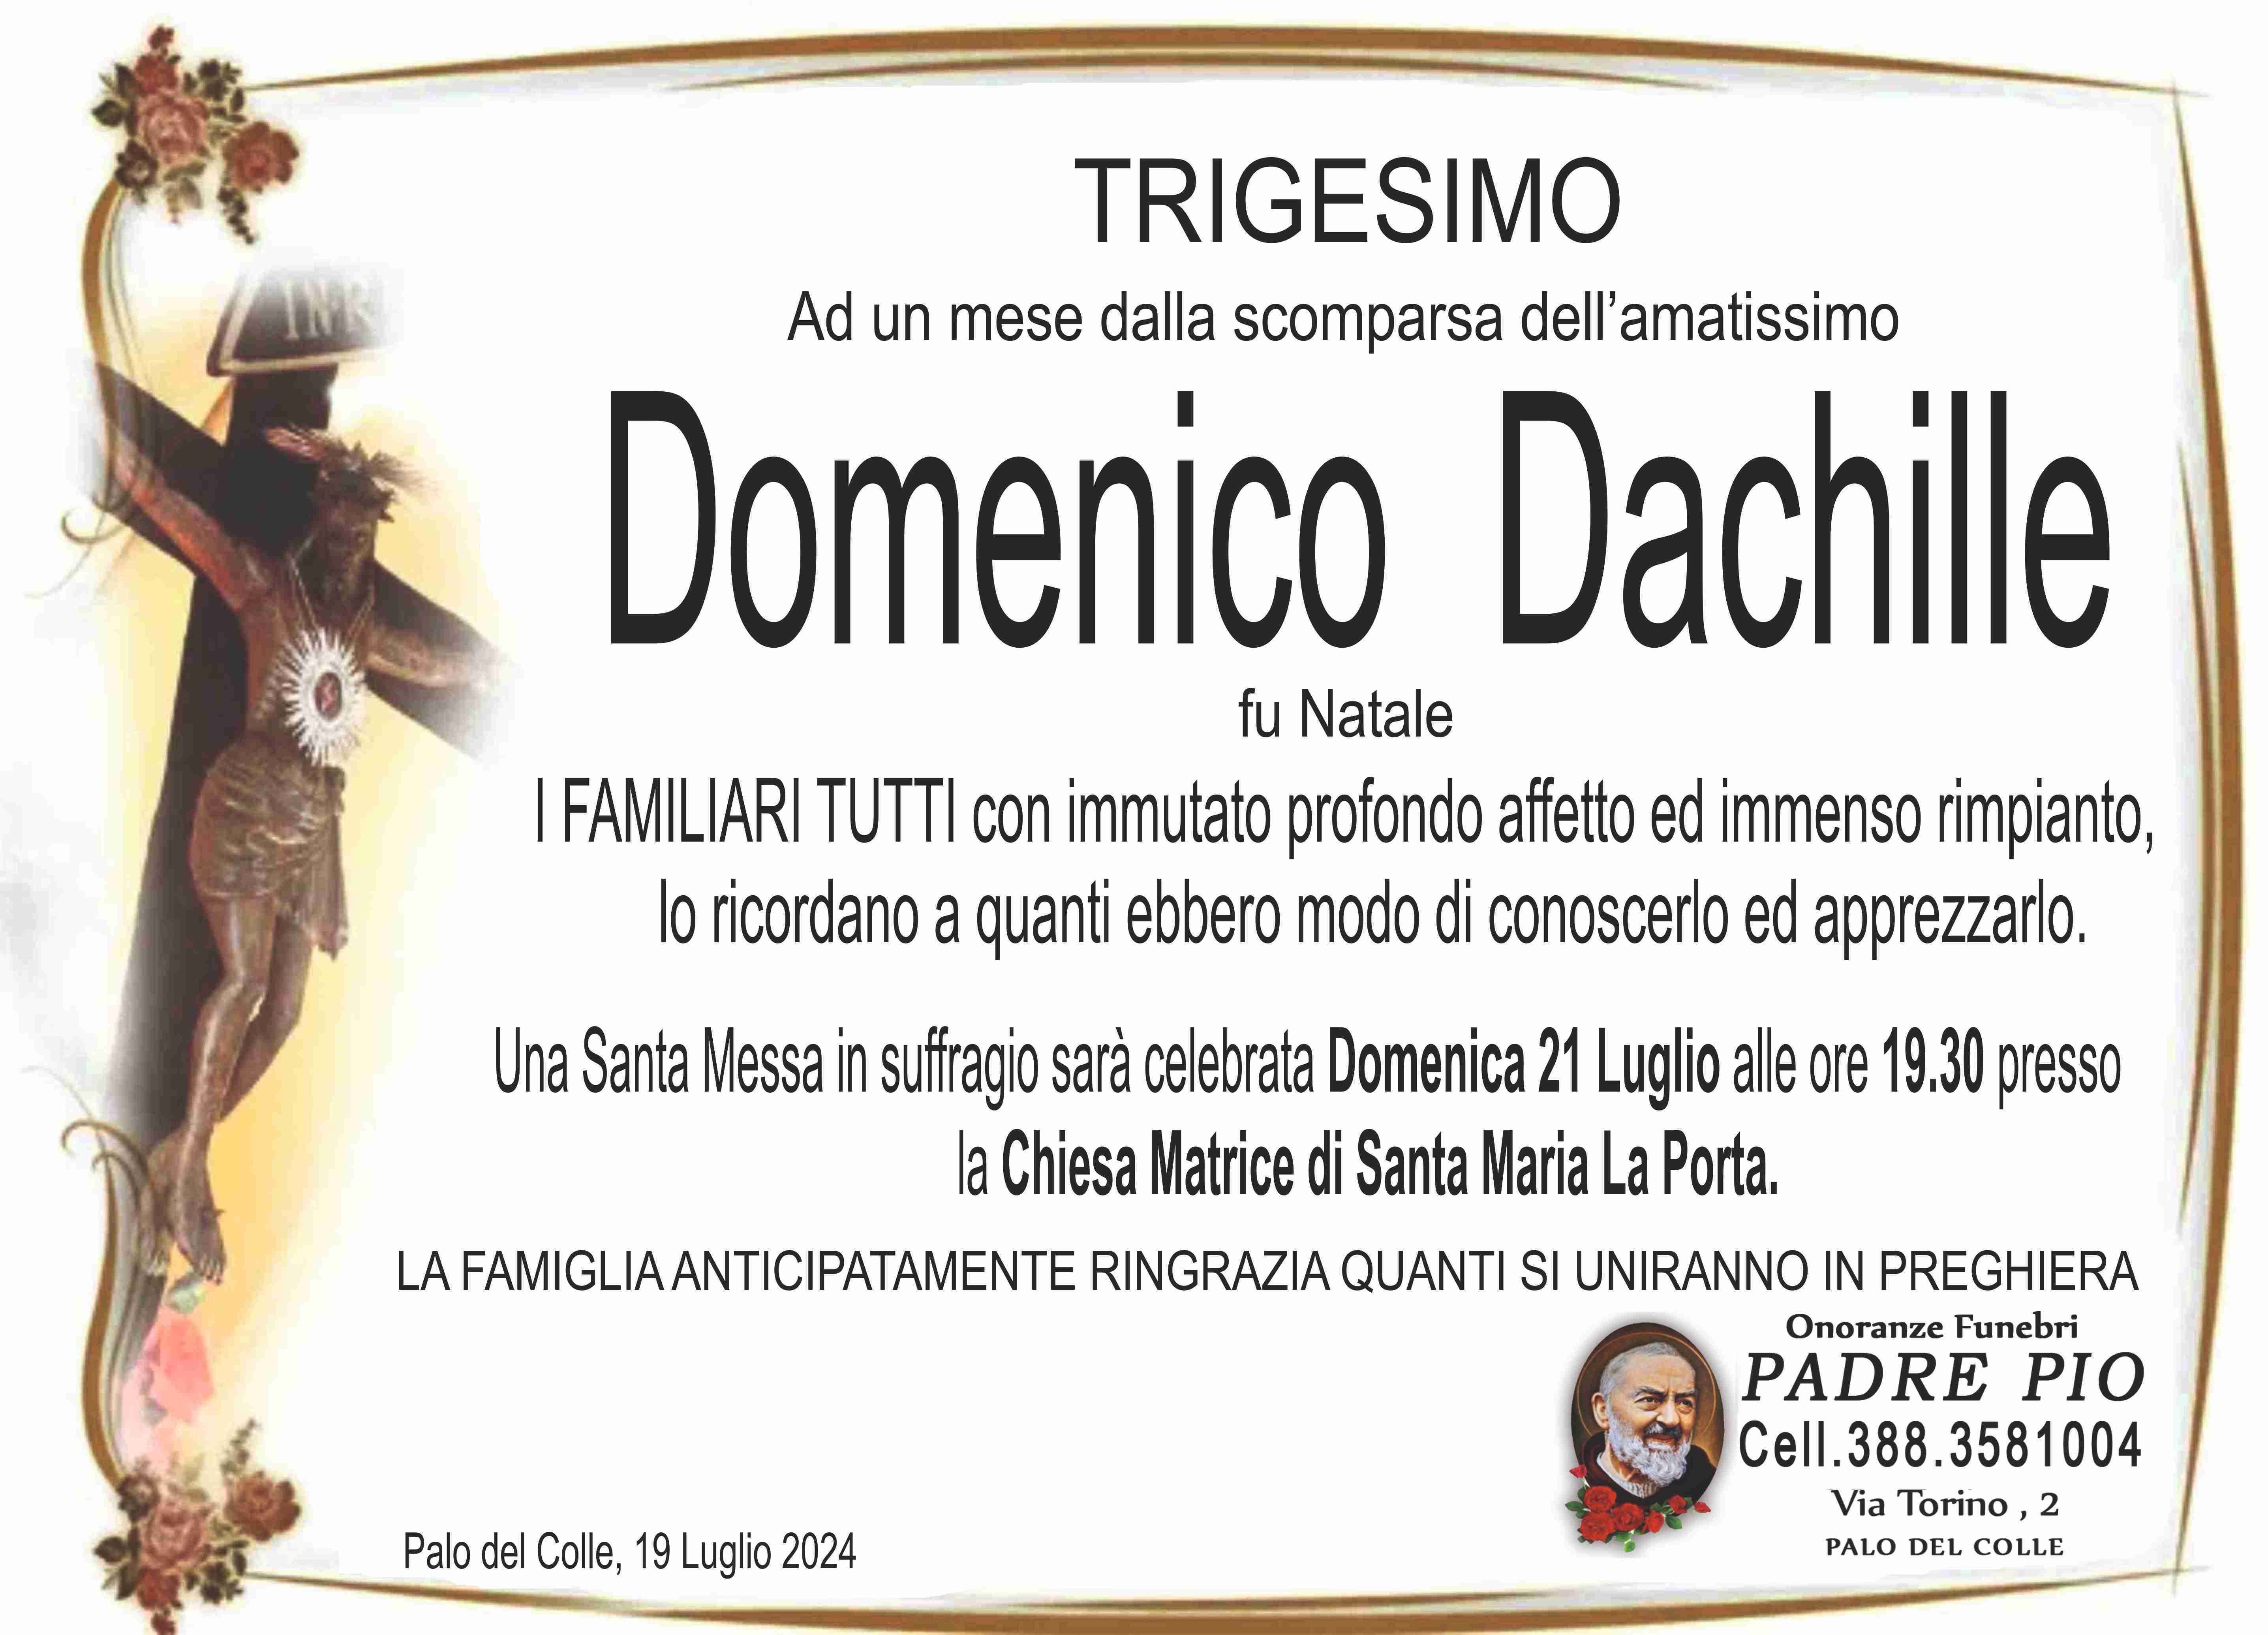 Domenico Dachille